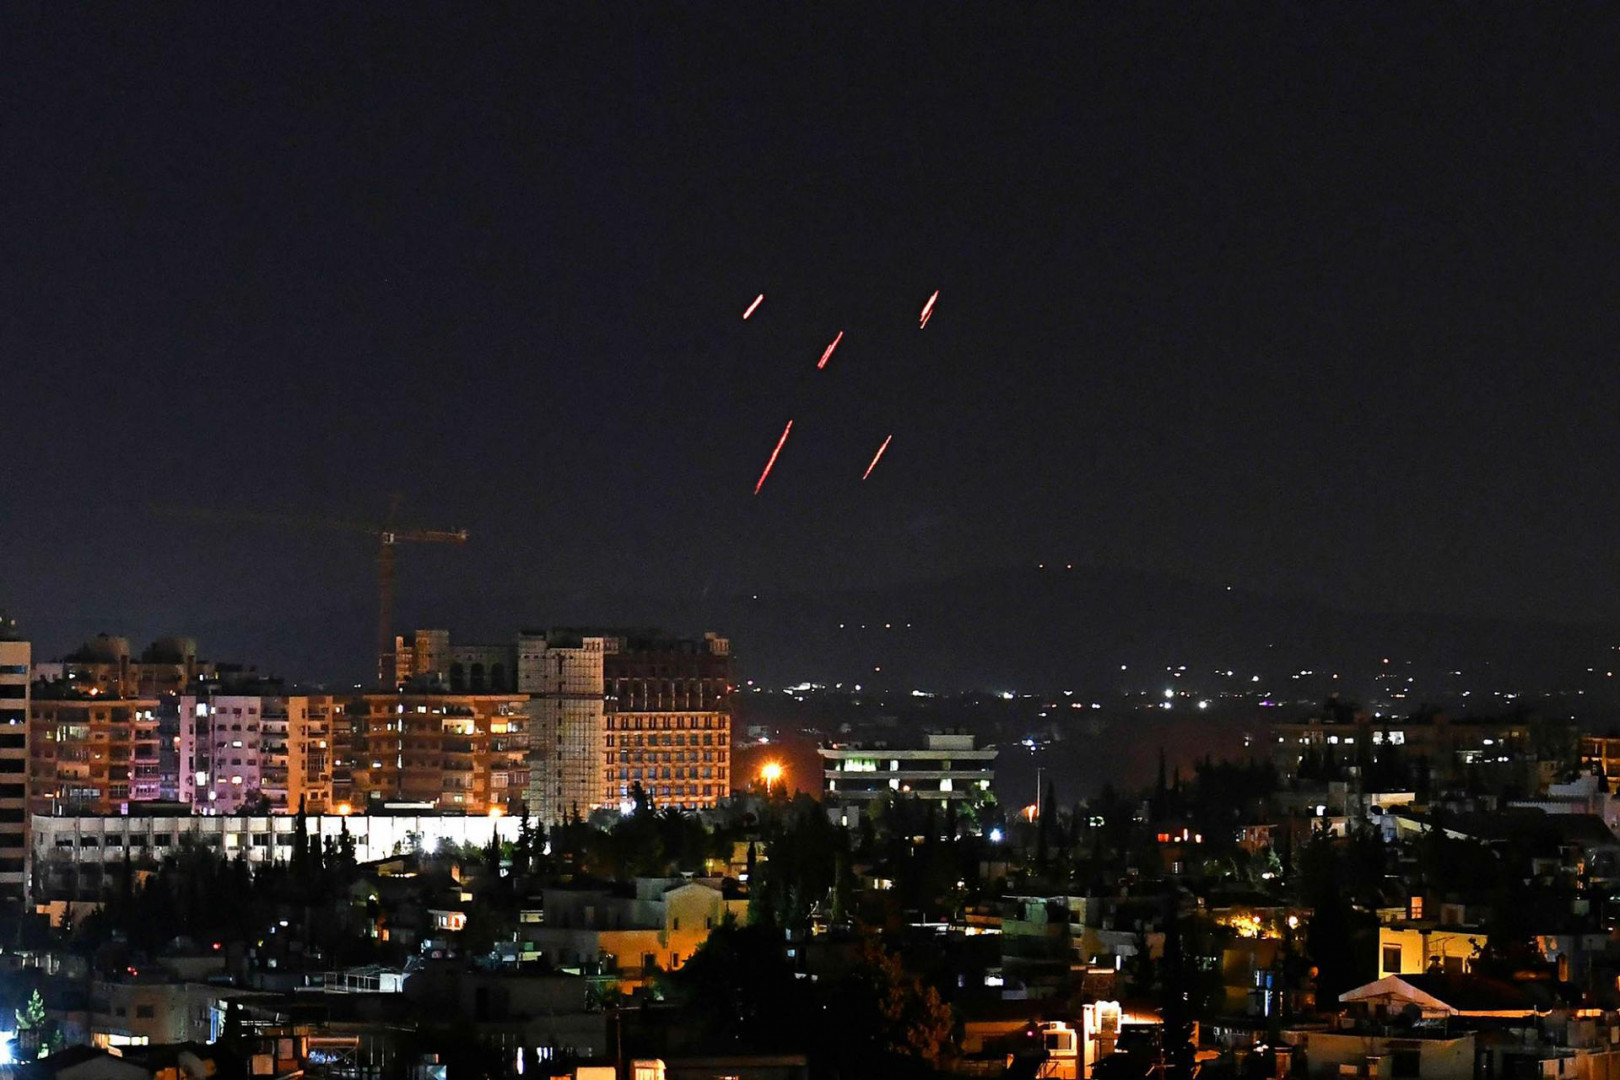 إصابة شخص بـ"قصف اسرائيلي" جنوب دمشق